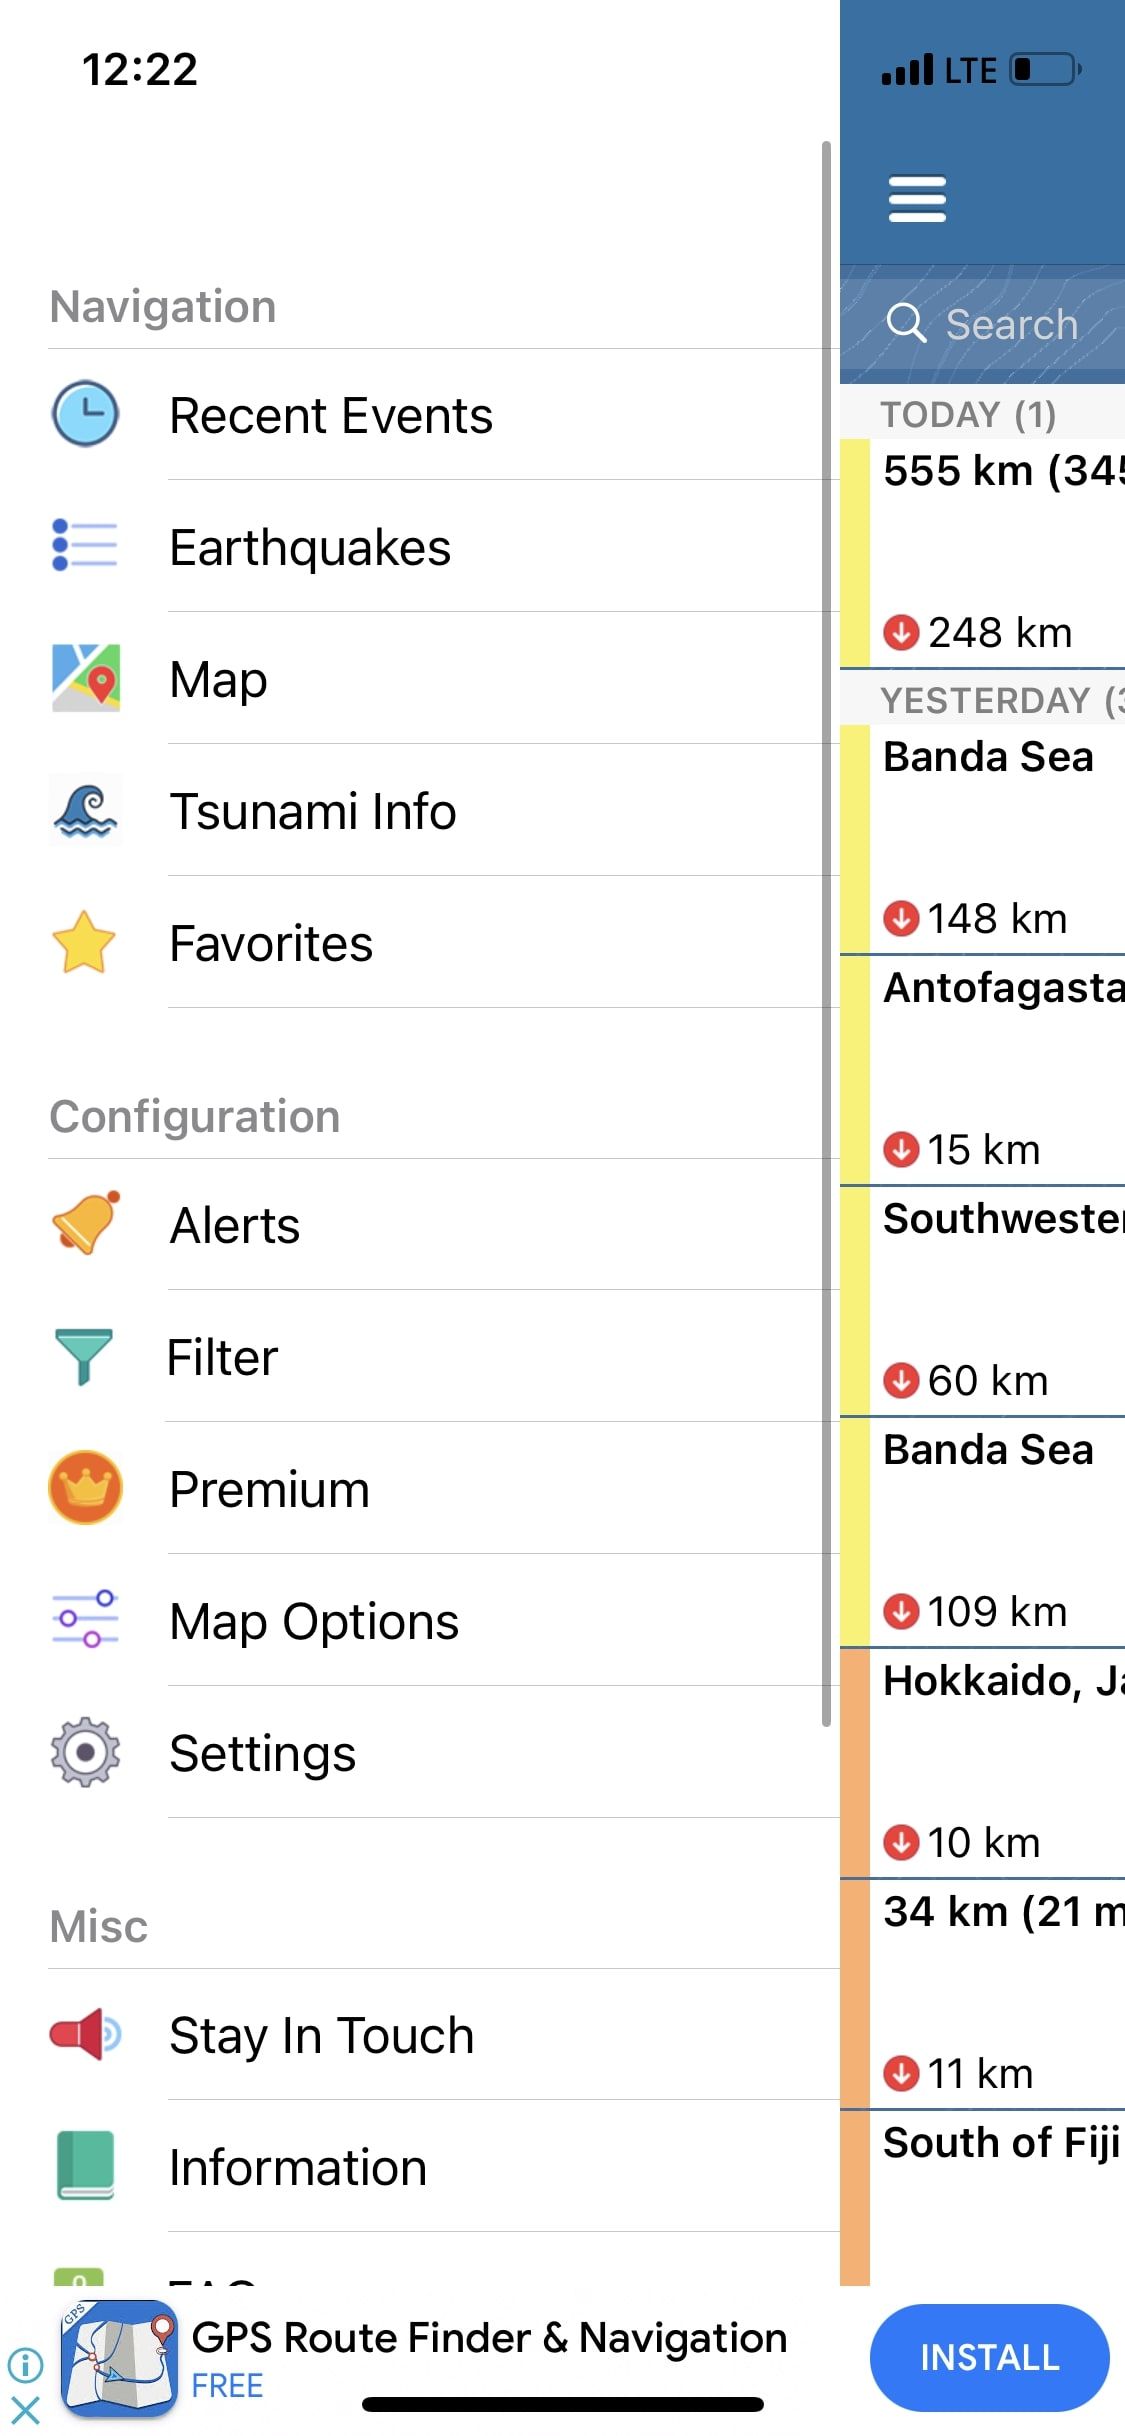 Earthquake plus alerts app settings menu